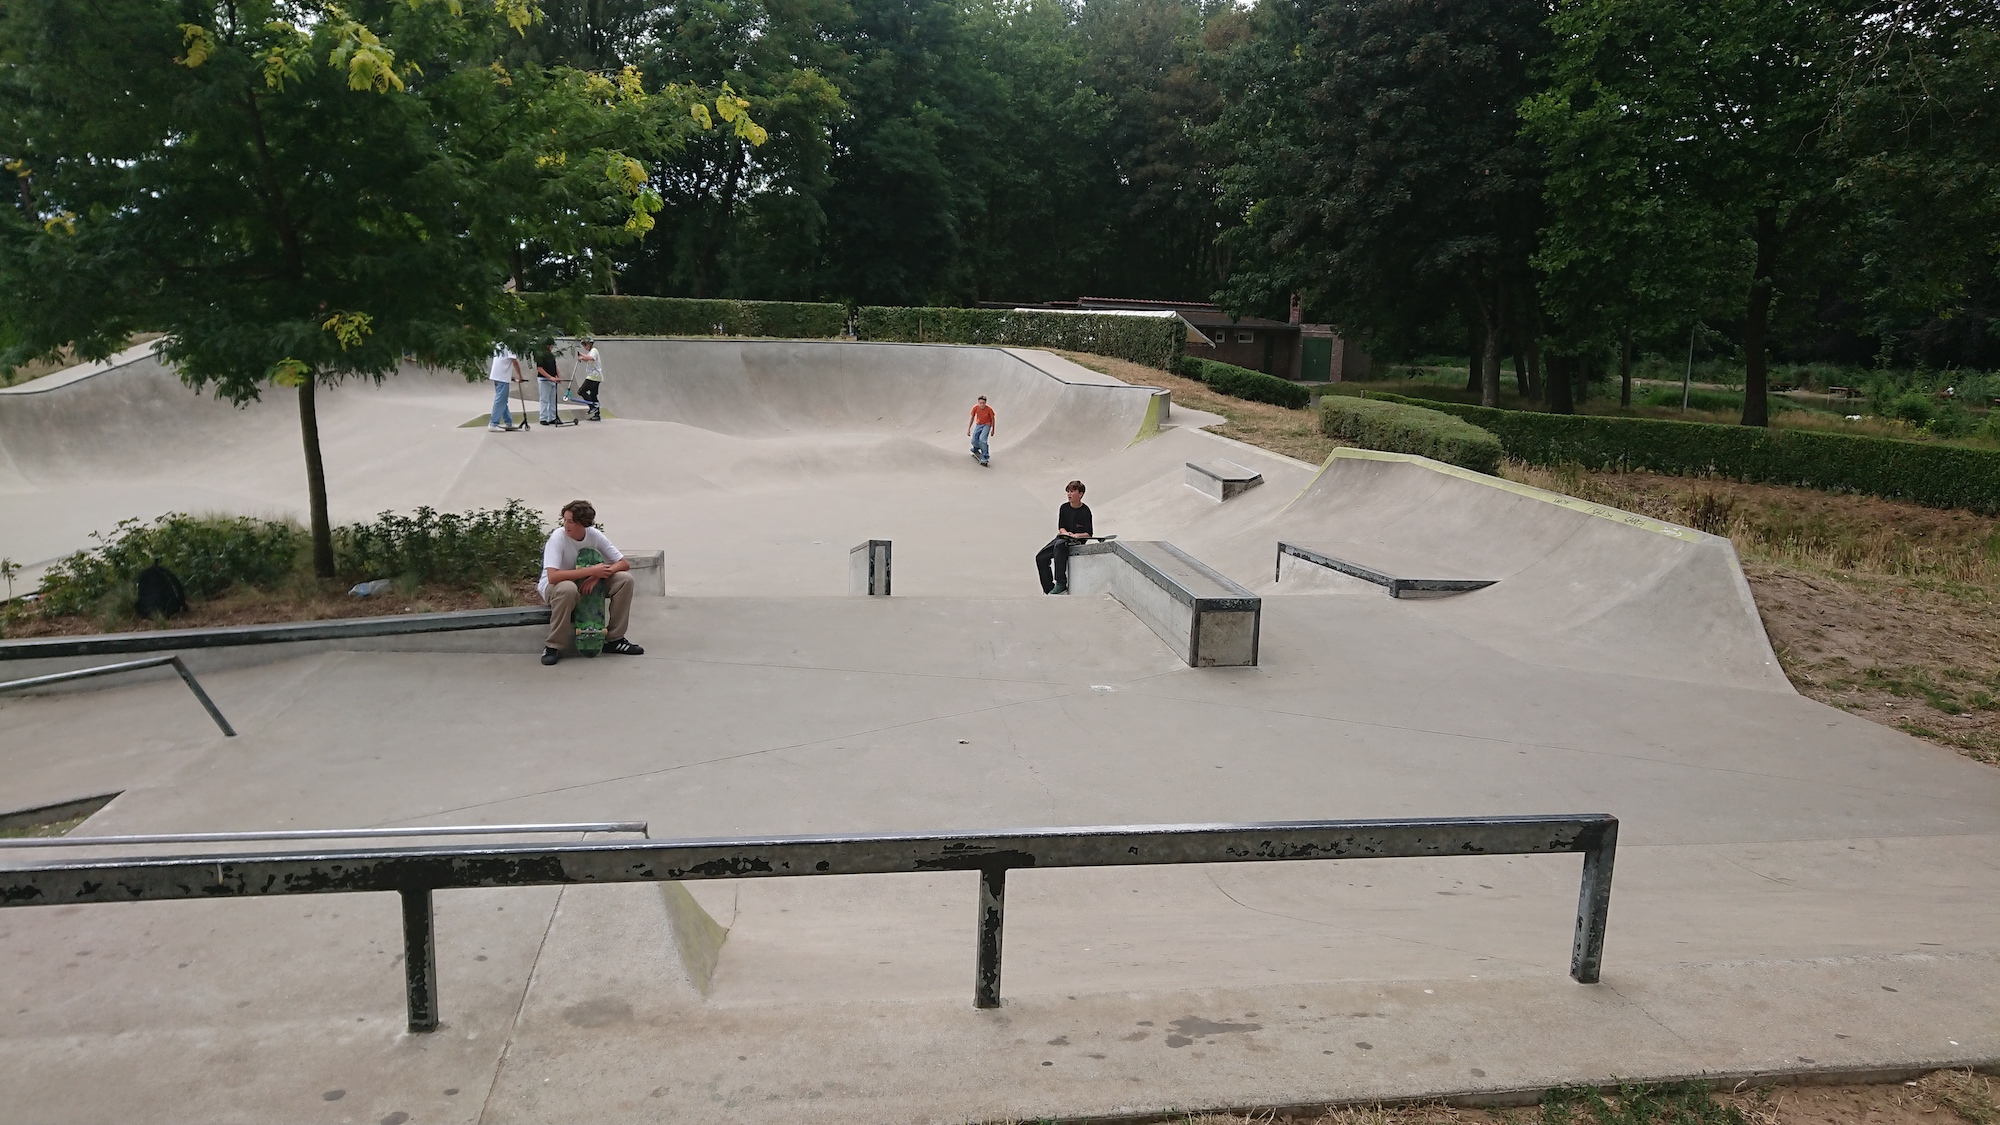 Lokeren skatepark